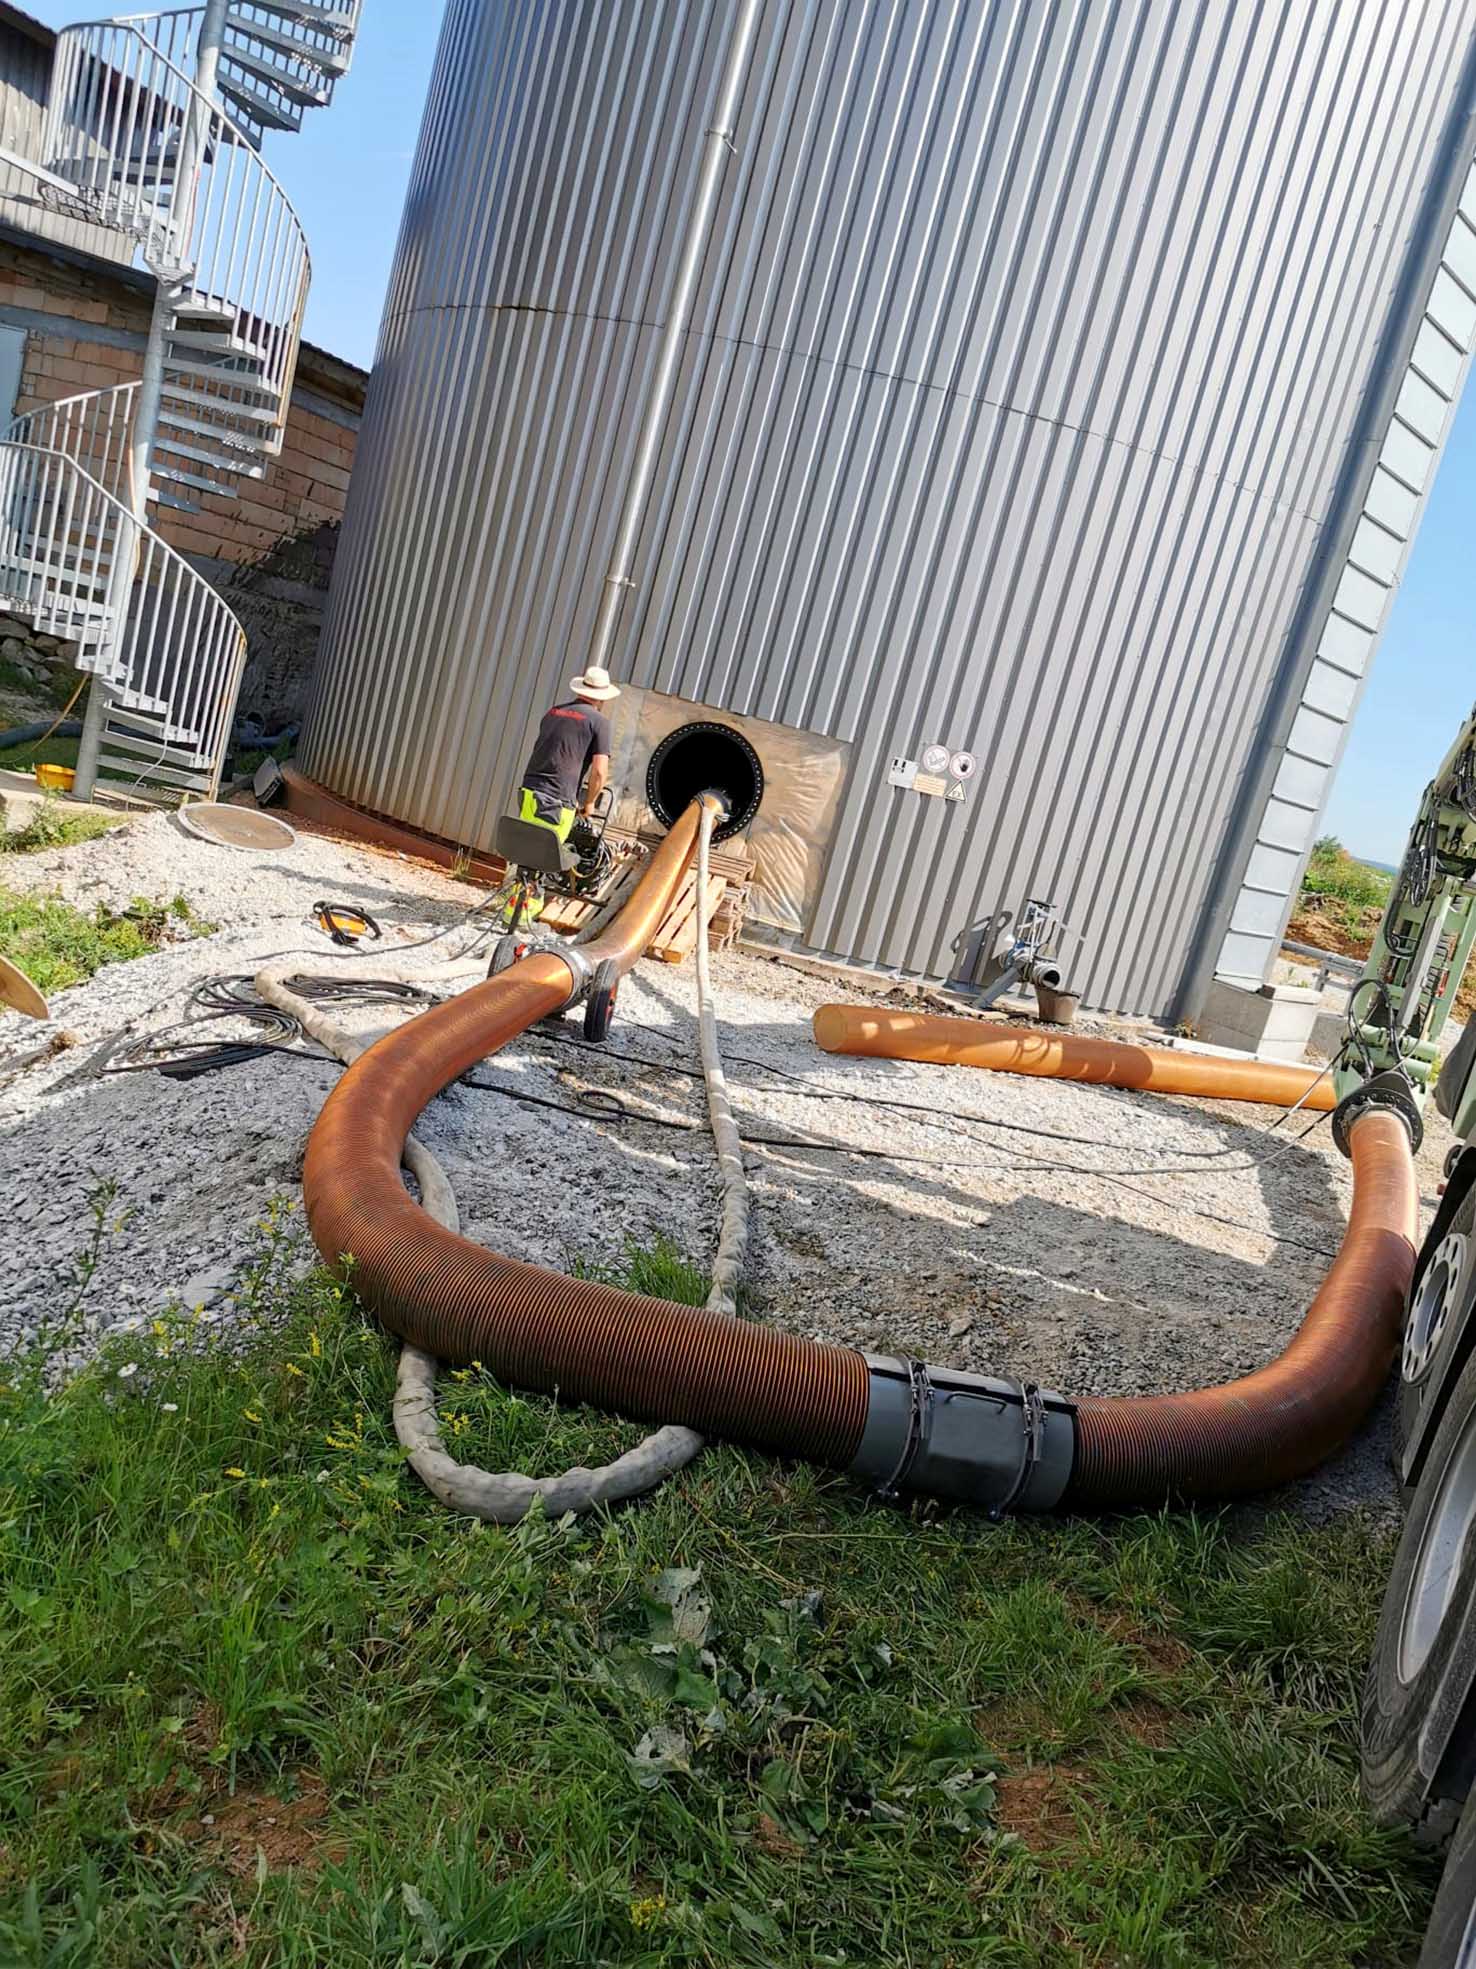 Biogasanlagen Faulturmentleerung